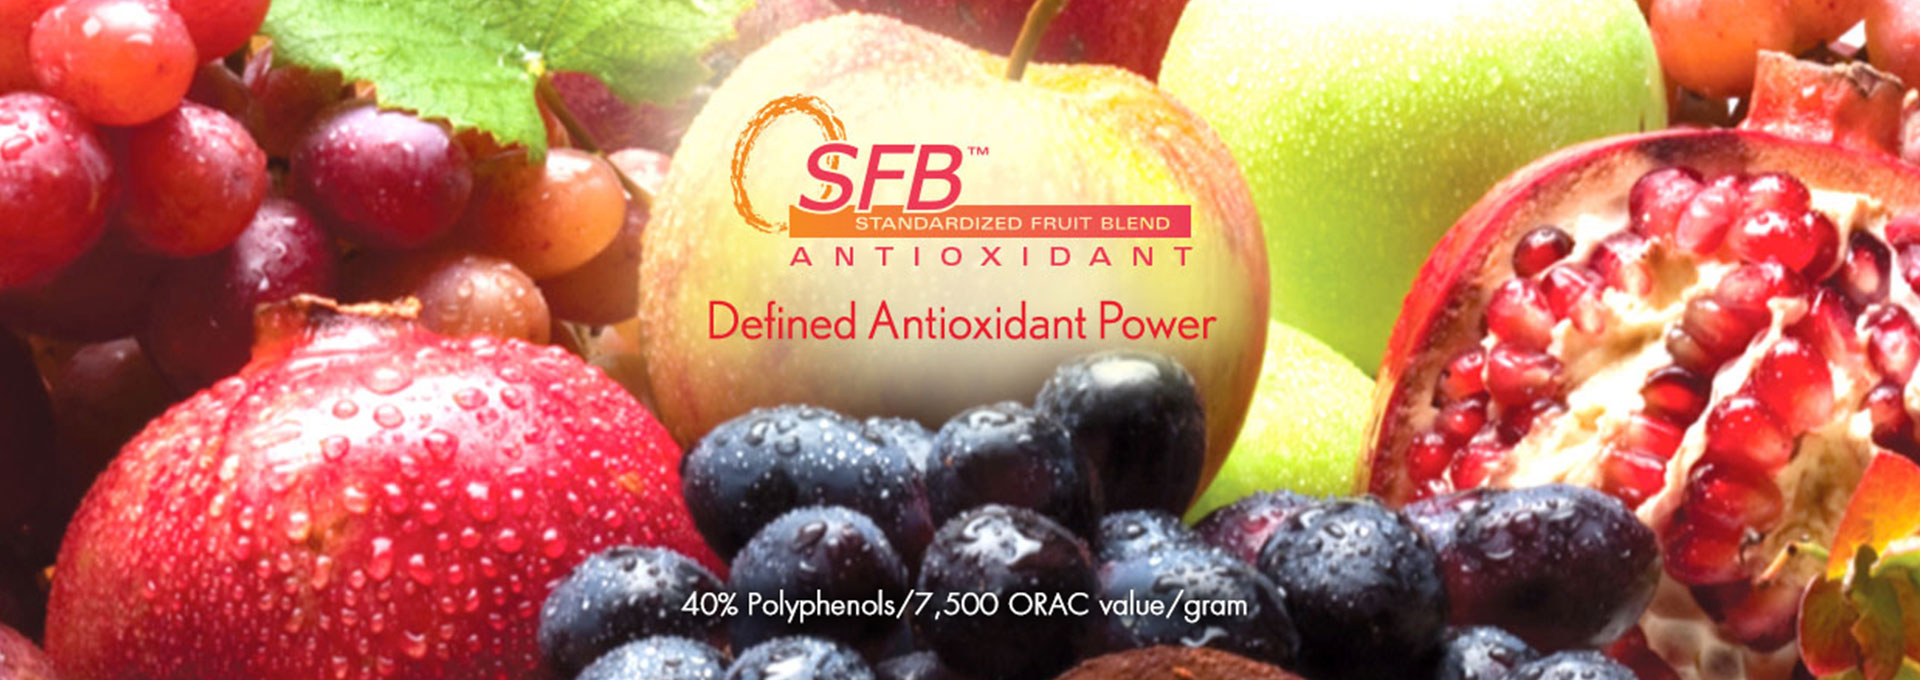 SFB Antioxidant Banner